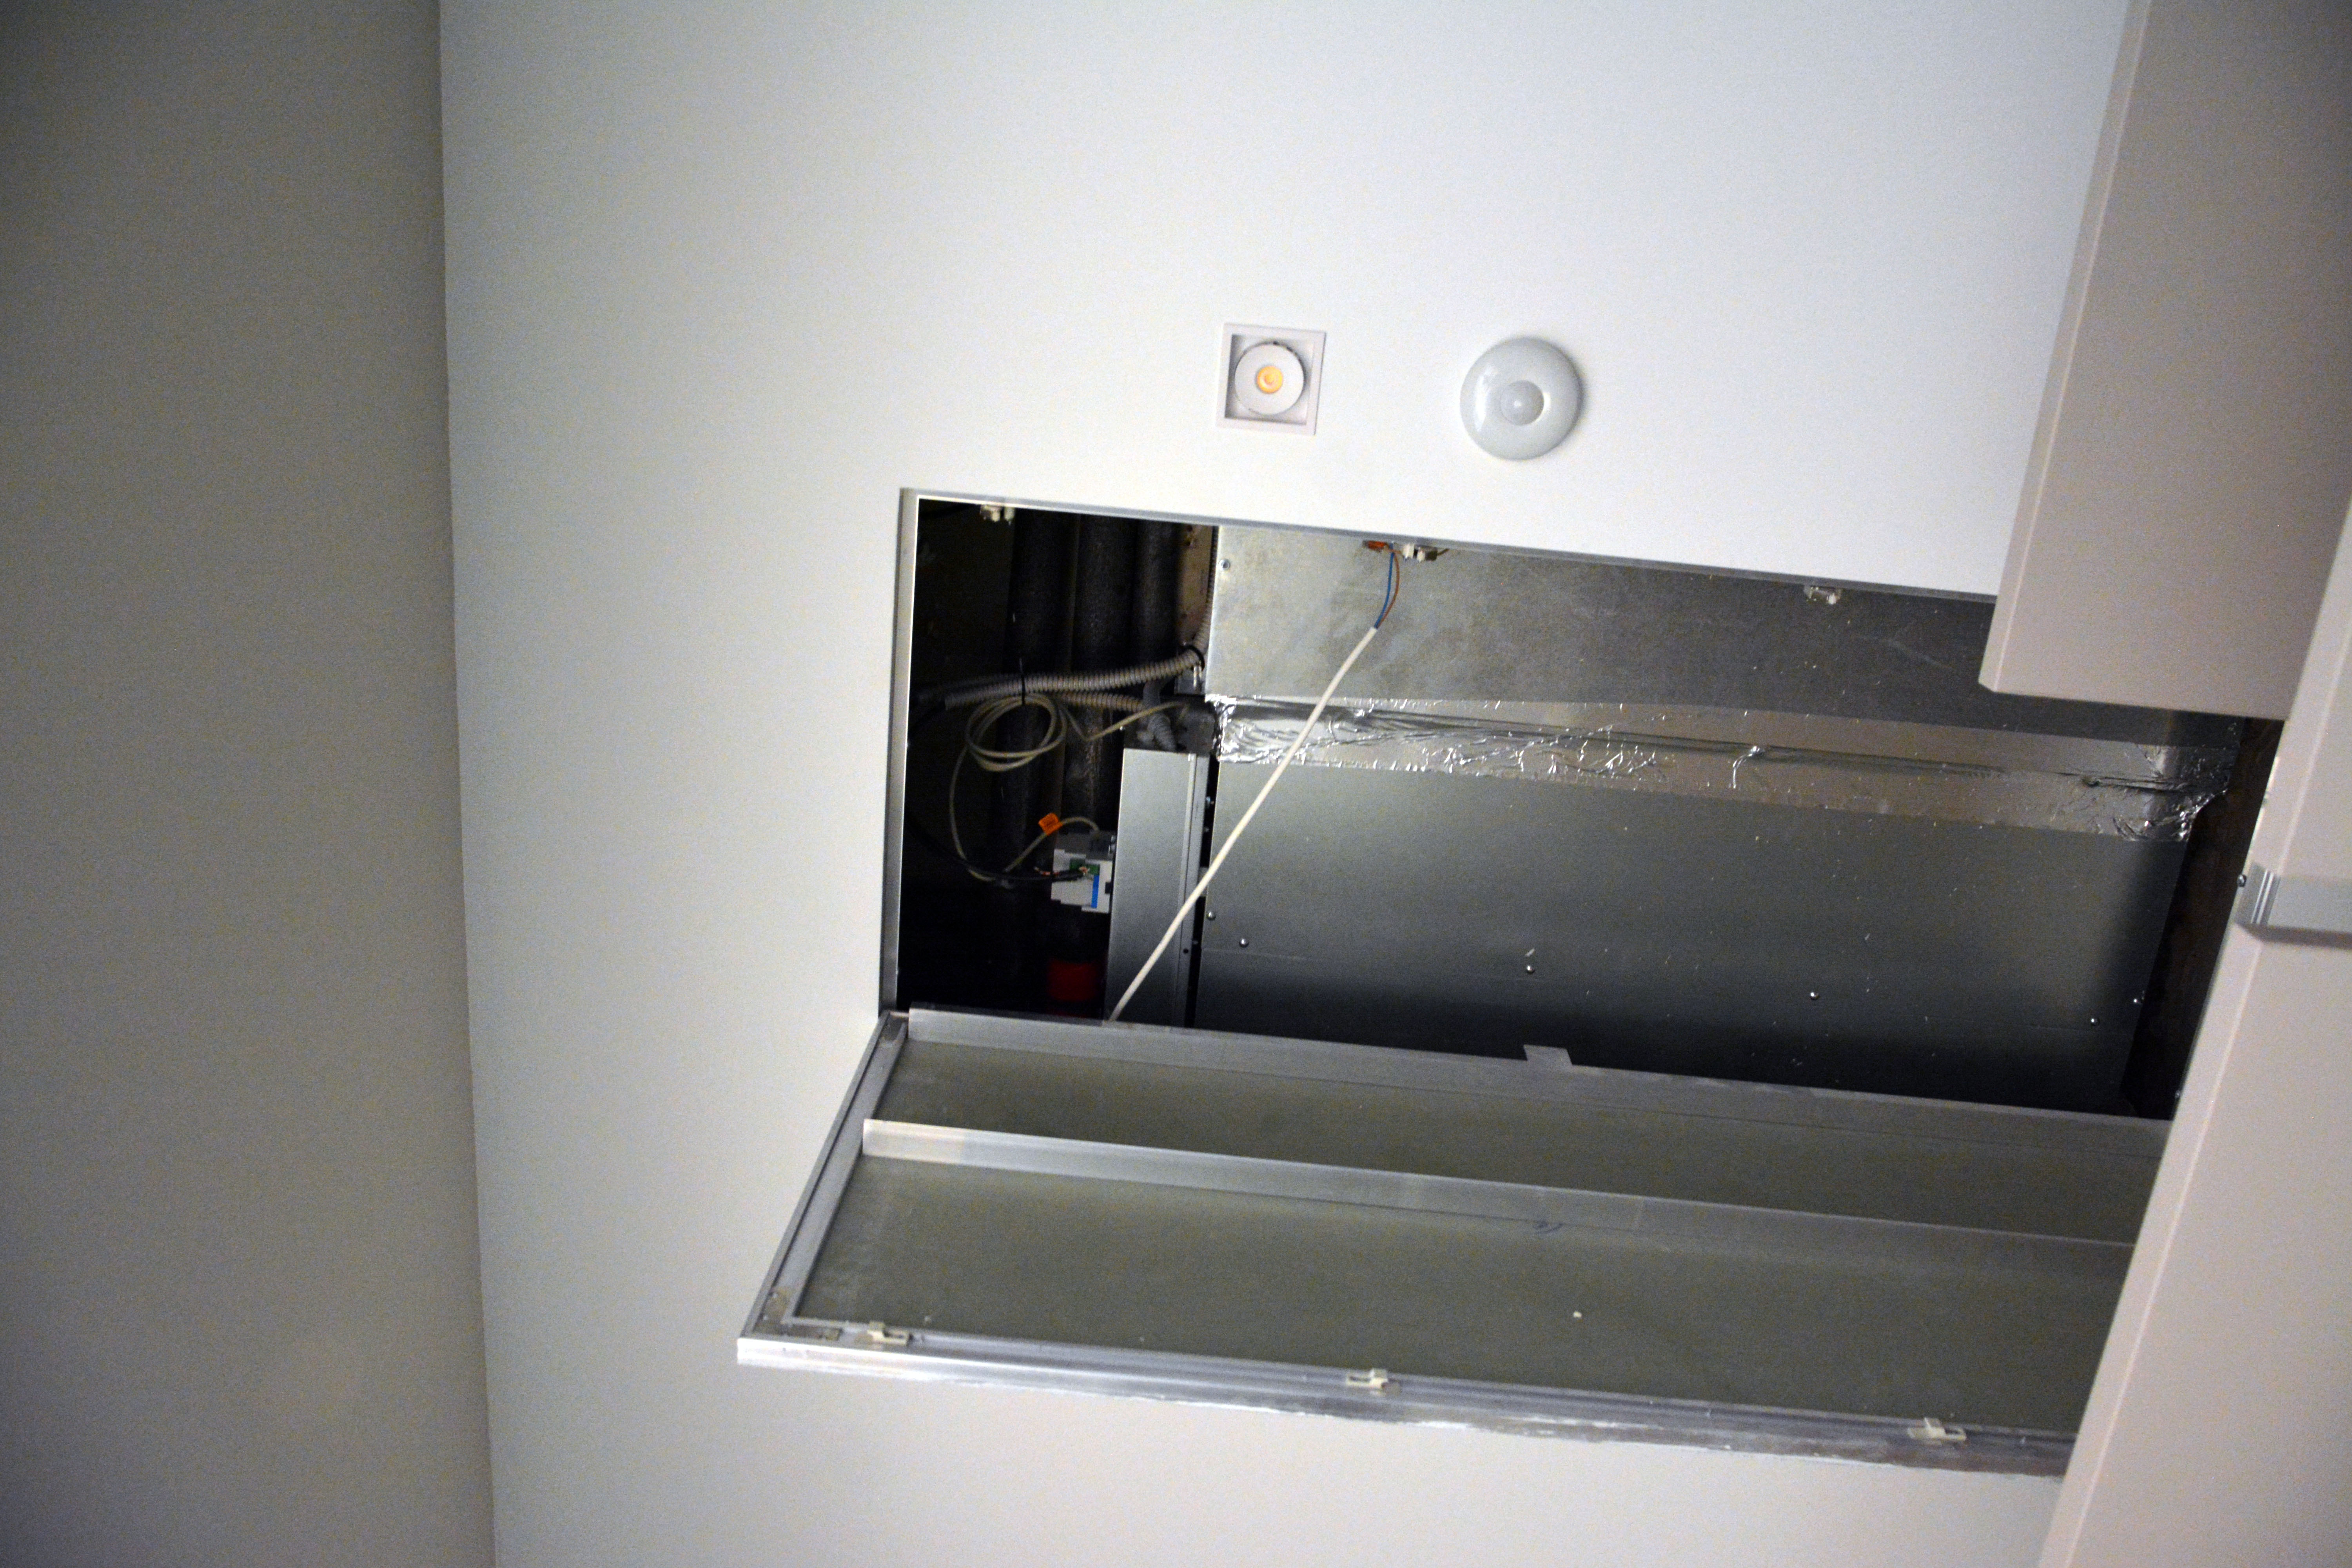 За дверцей в фальш-потолке расположился канальный кондиционер с модулем управления. На потолке можно заметить датчик движения